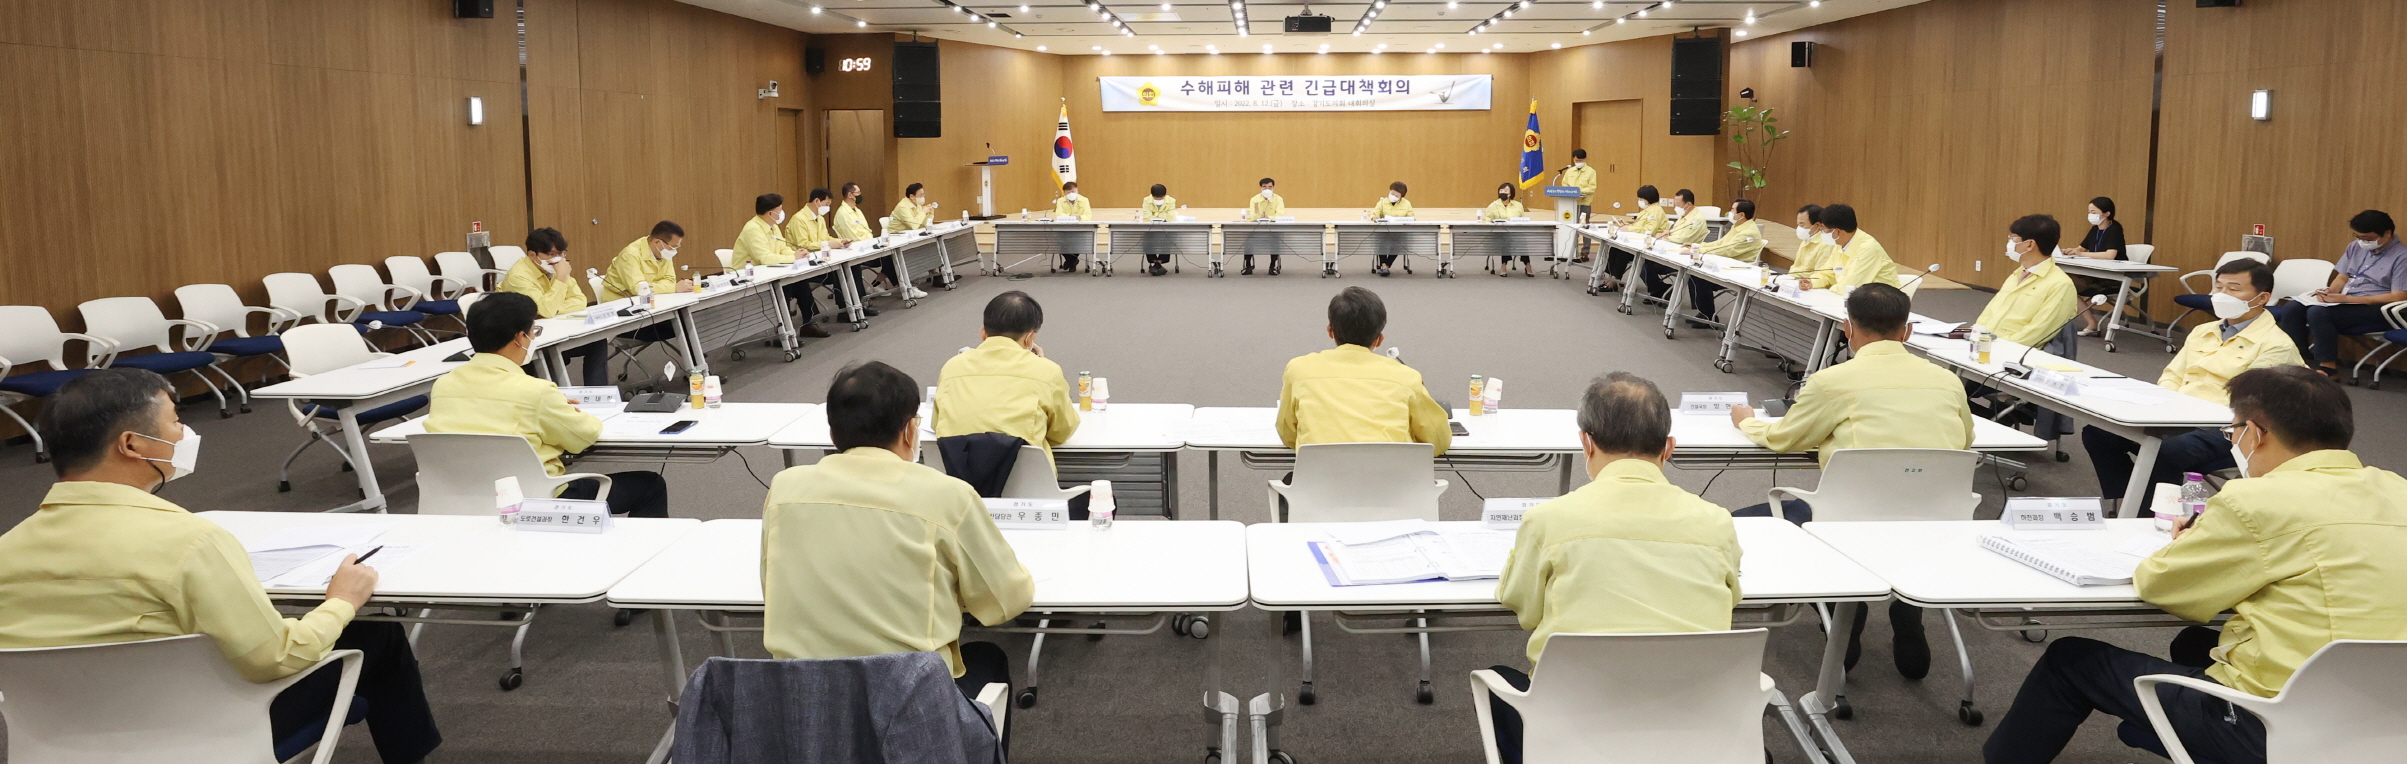 염종현 도의장, ‘경기도의회 수해 관련 긴급 대책회의’ 개최